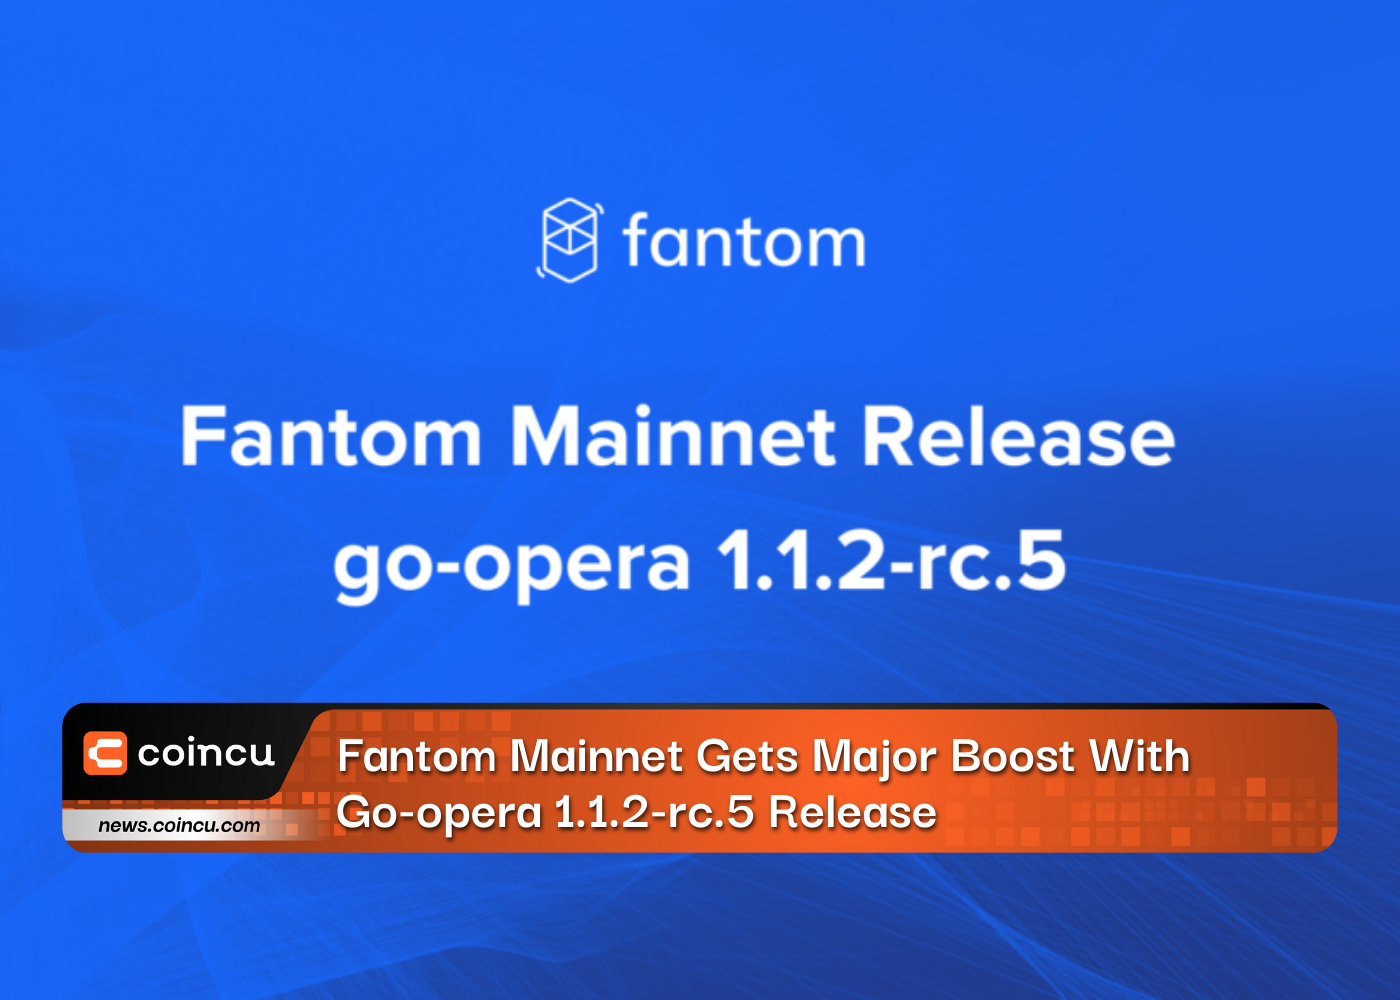 Fantom Mainnet erhält mit der Veröffentlichung von Go-opera 1.1.2-rc.5 großen Aufschwung